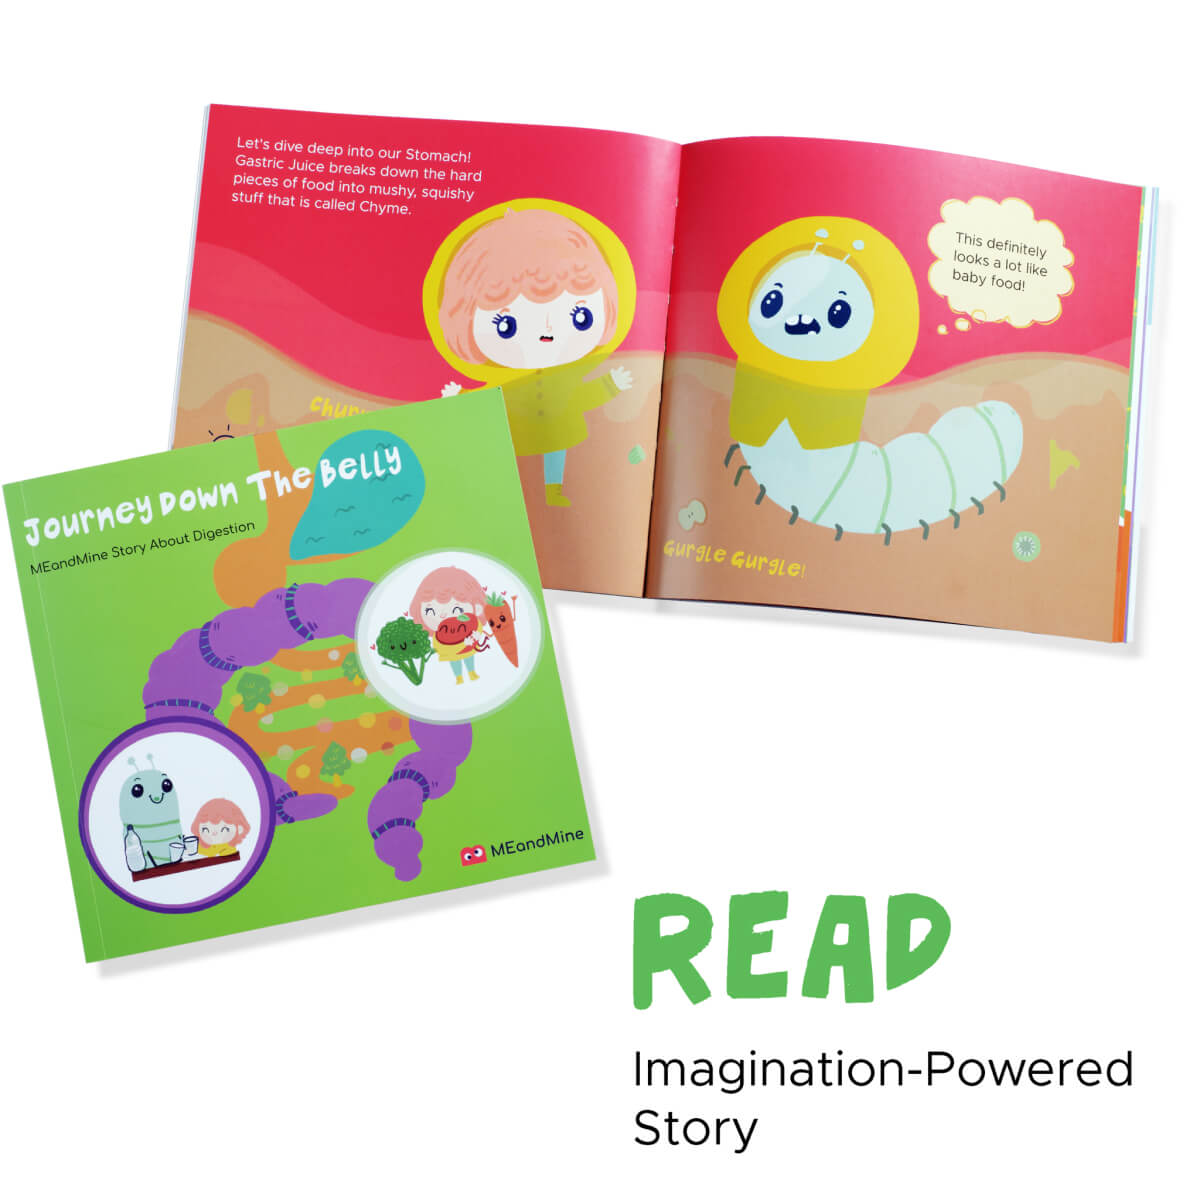 英文繪本故事讓幼兒認識食物的營養成份，培養彩虹健康飲食習慣。